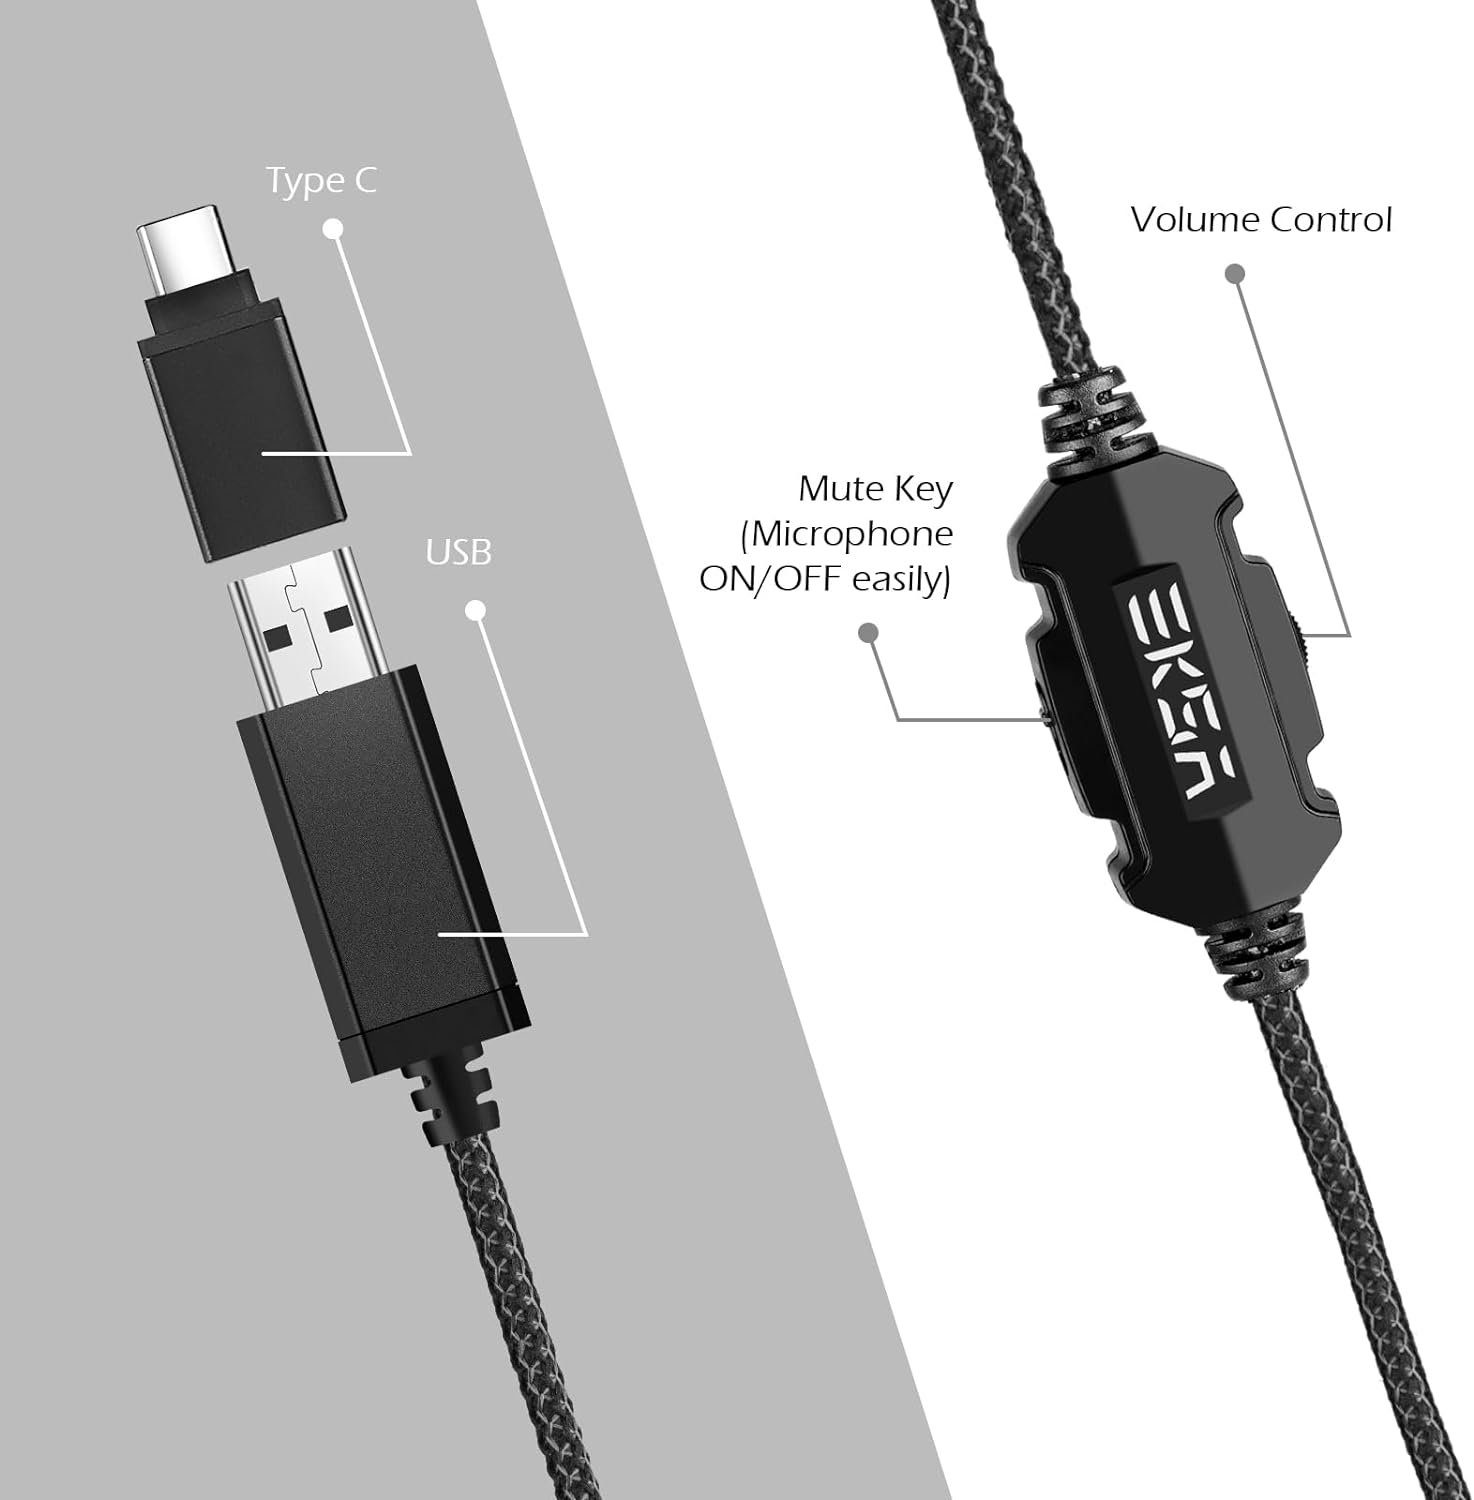 pc Gaming-Headset für (Gaming kabel EKSA konsole) gaming USB Headset PC beleuchtung mit mit Usb Nosie Cancelling, headset für Headset, kopfhörer Mikrofon,